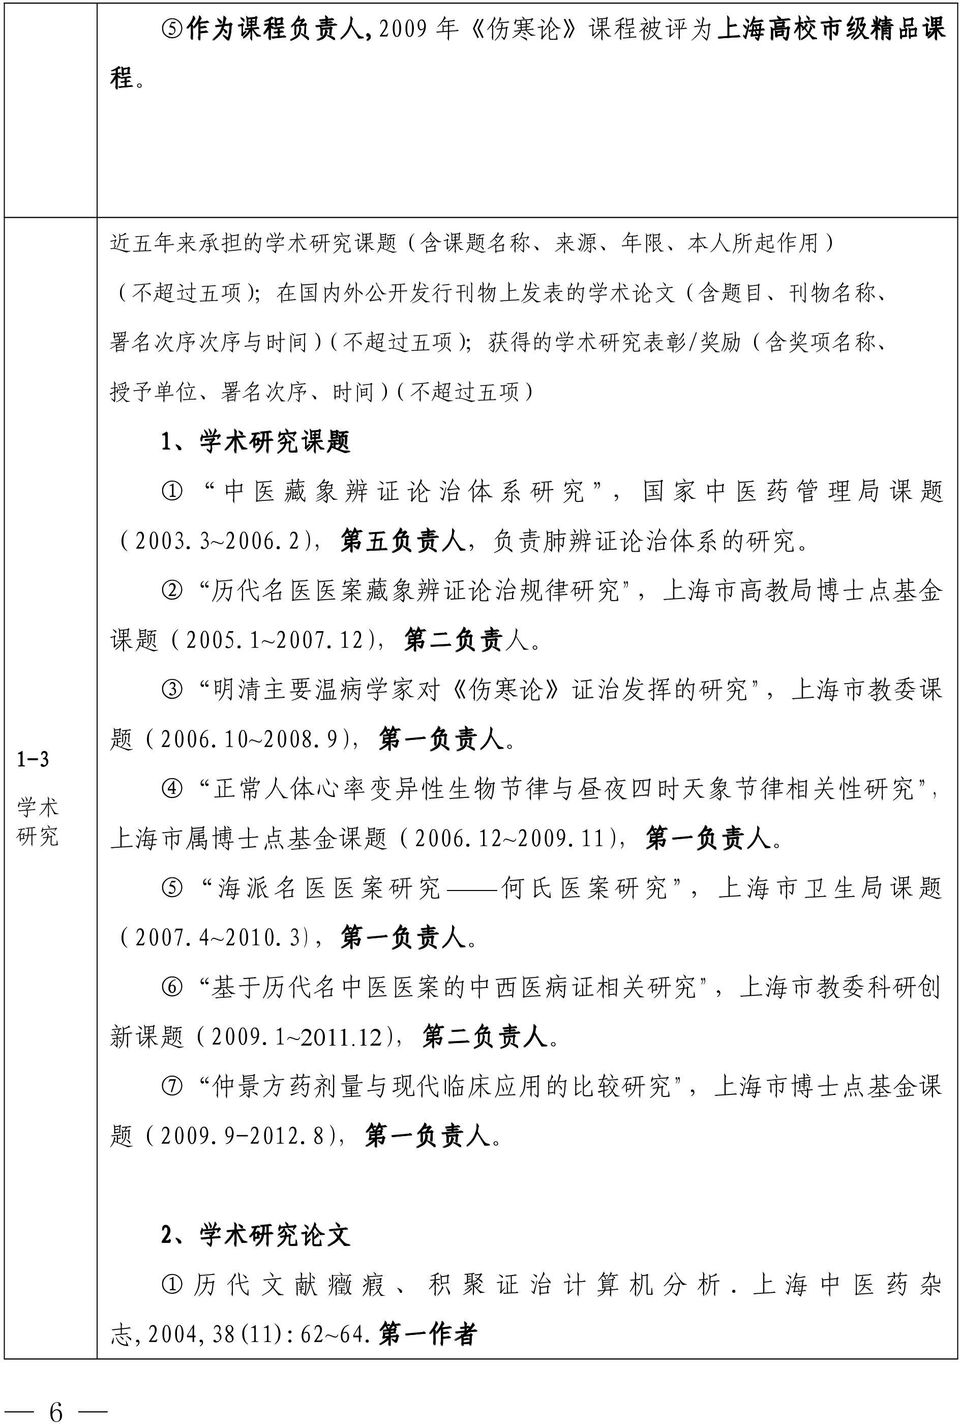 2), 第 五 负 责 人, 负 责 肺 辨 证 论 治 体 系 的 研 究 2 历 代 名 医 医 案 藏 象 辨 证 论 治 规 律 研 究, 上 海 市 高 教 局 博 士 点 基 金 课 题 (2005.1~2007.